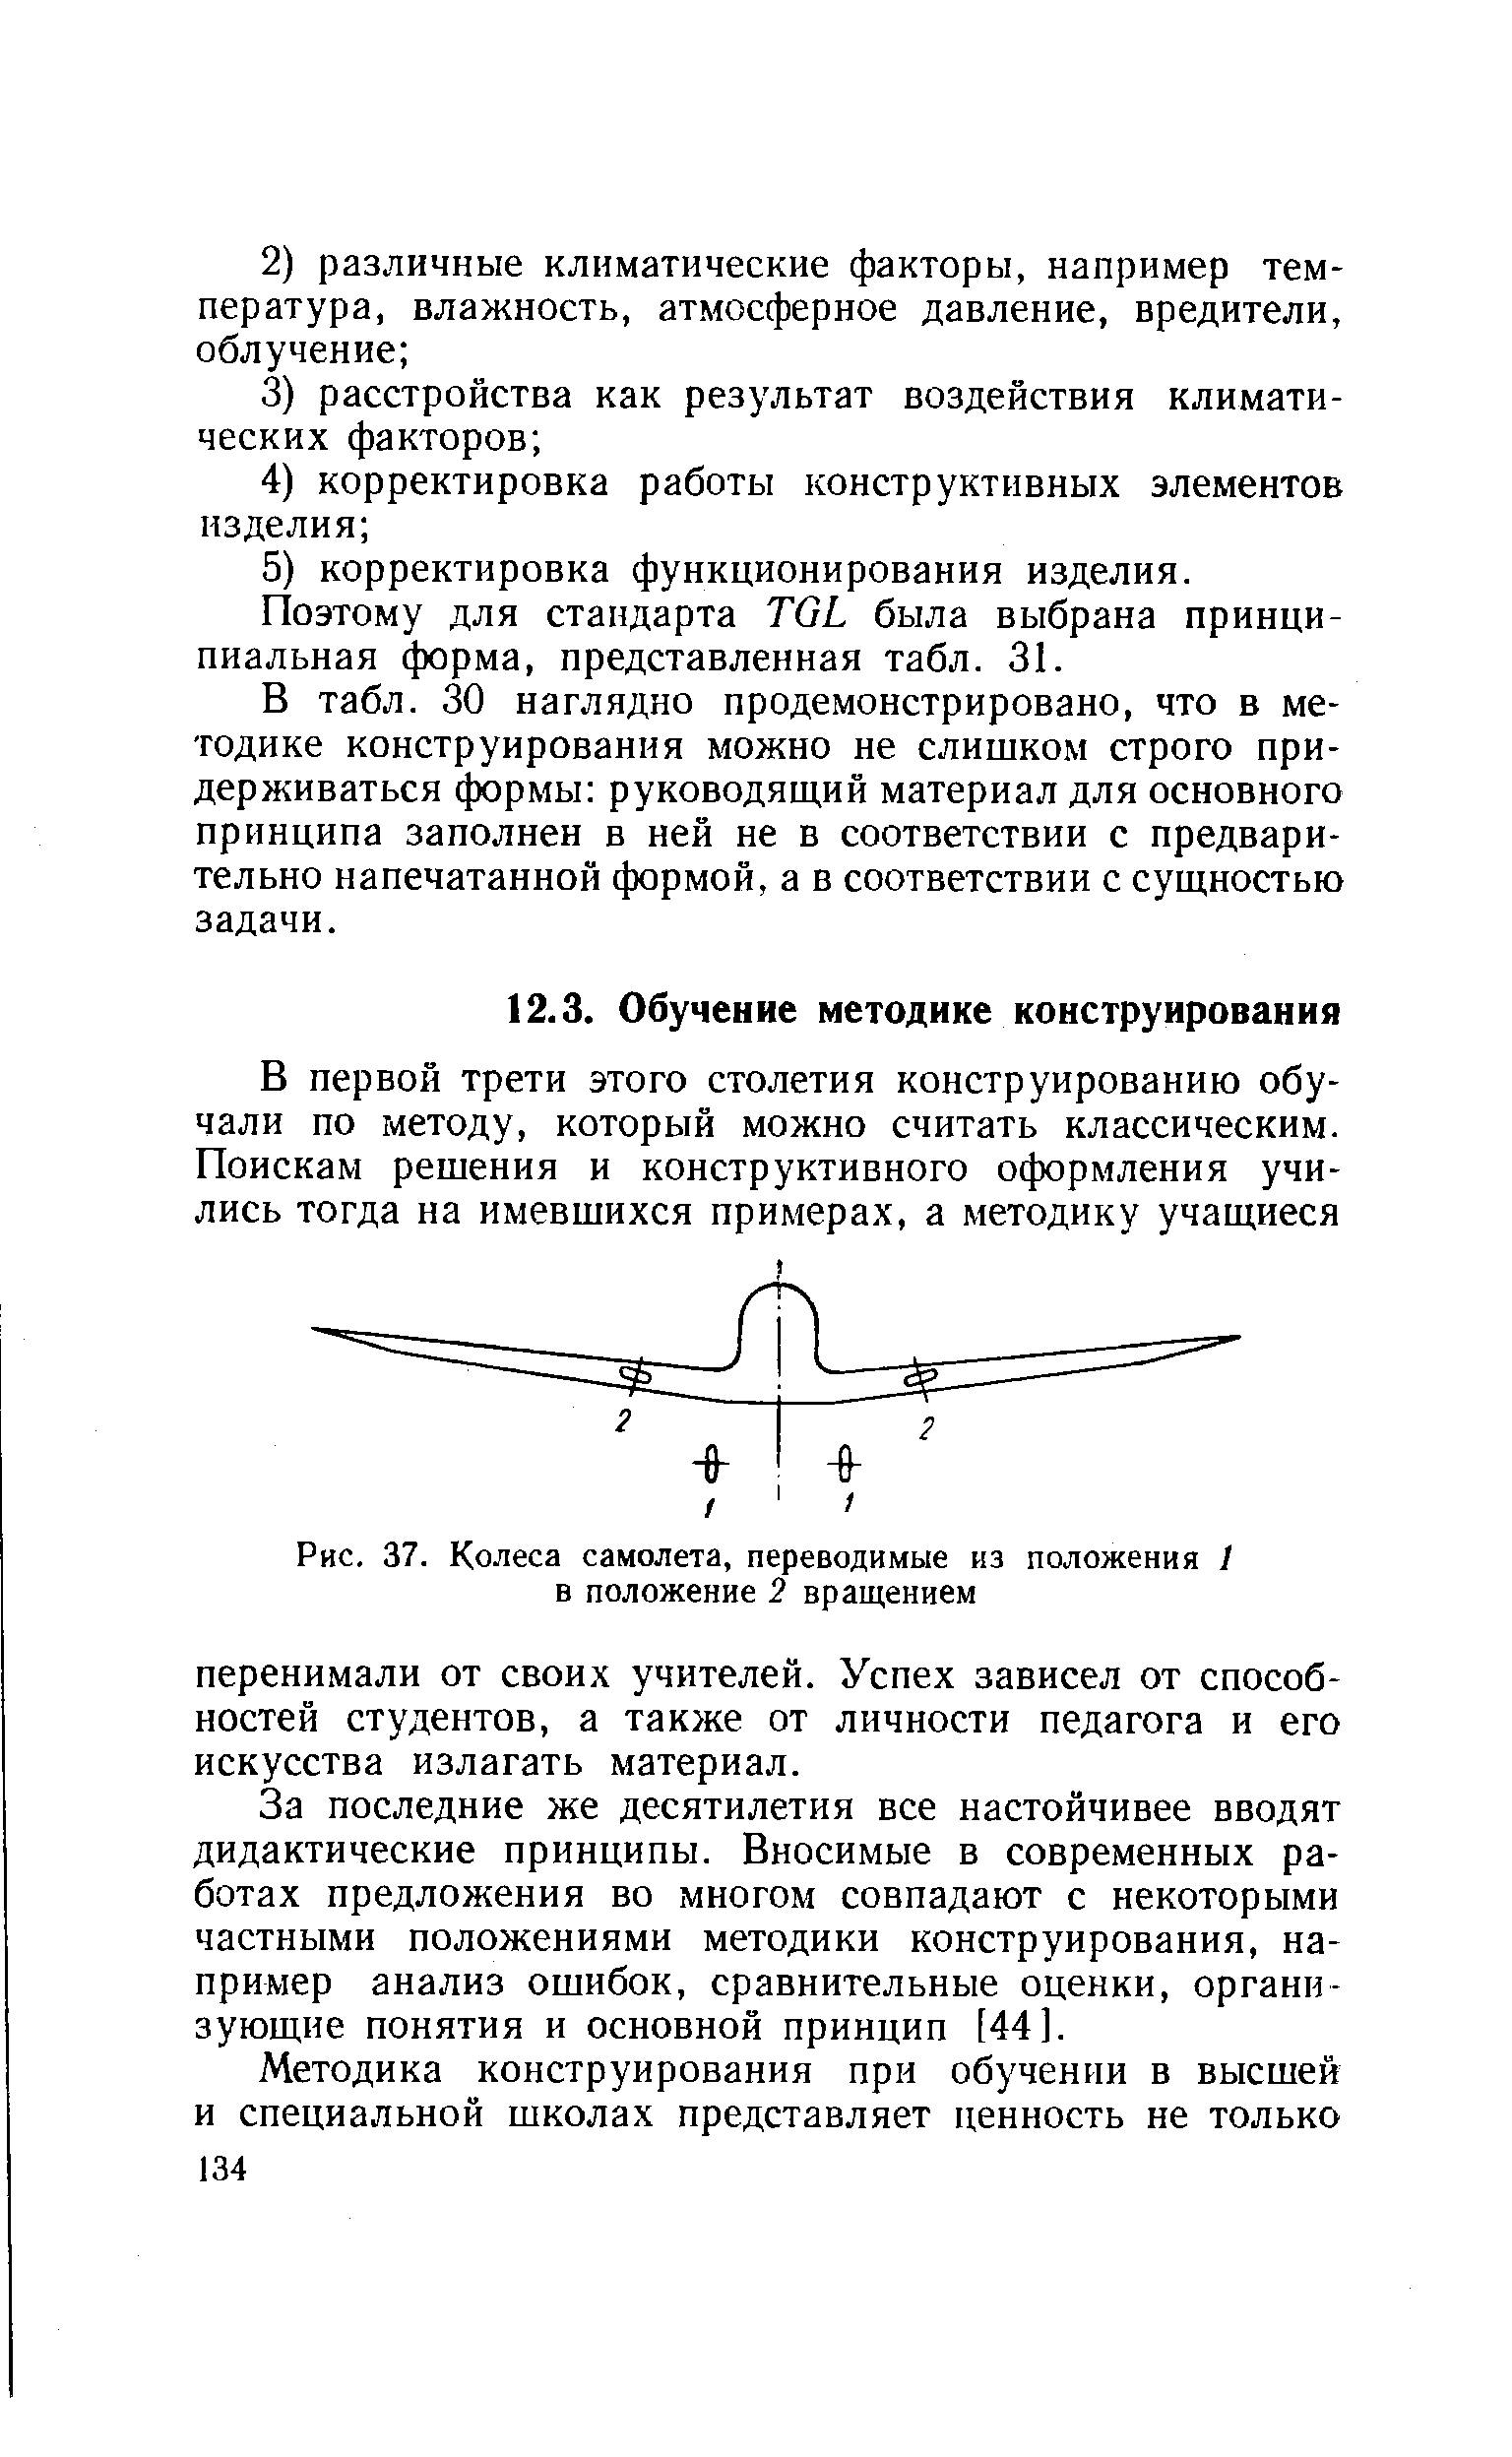 Рис. 37. Колеса самолета, переводимые из положения 1 в положение 2 вращением
